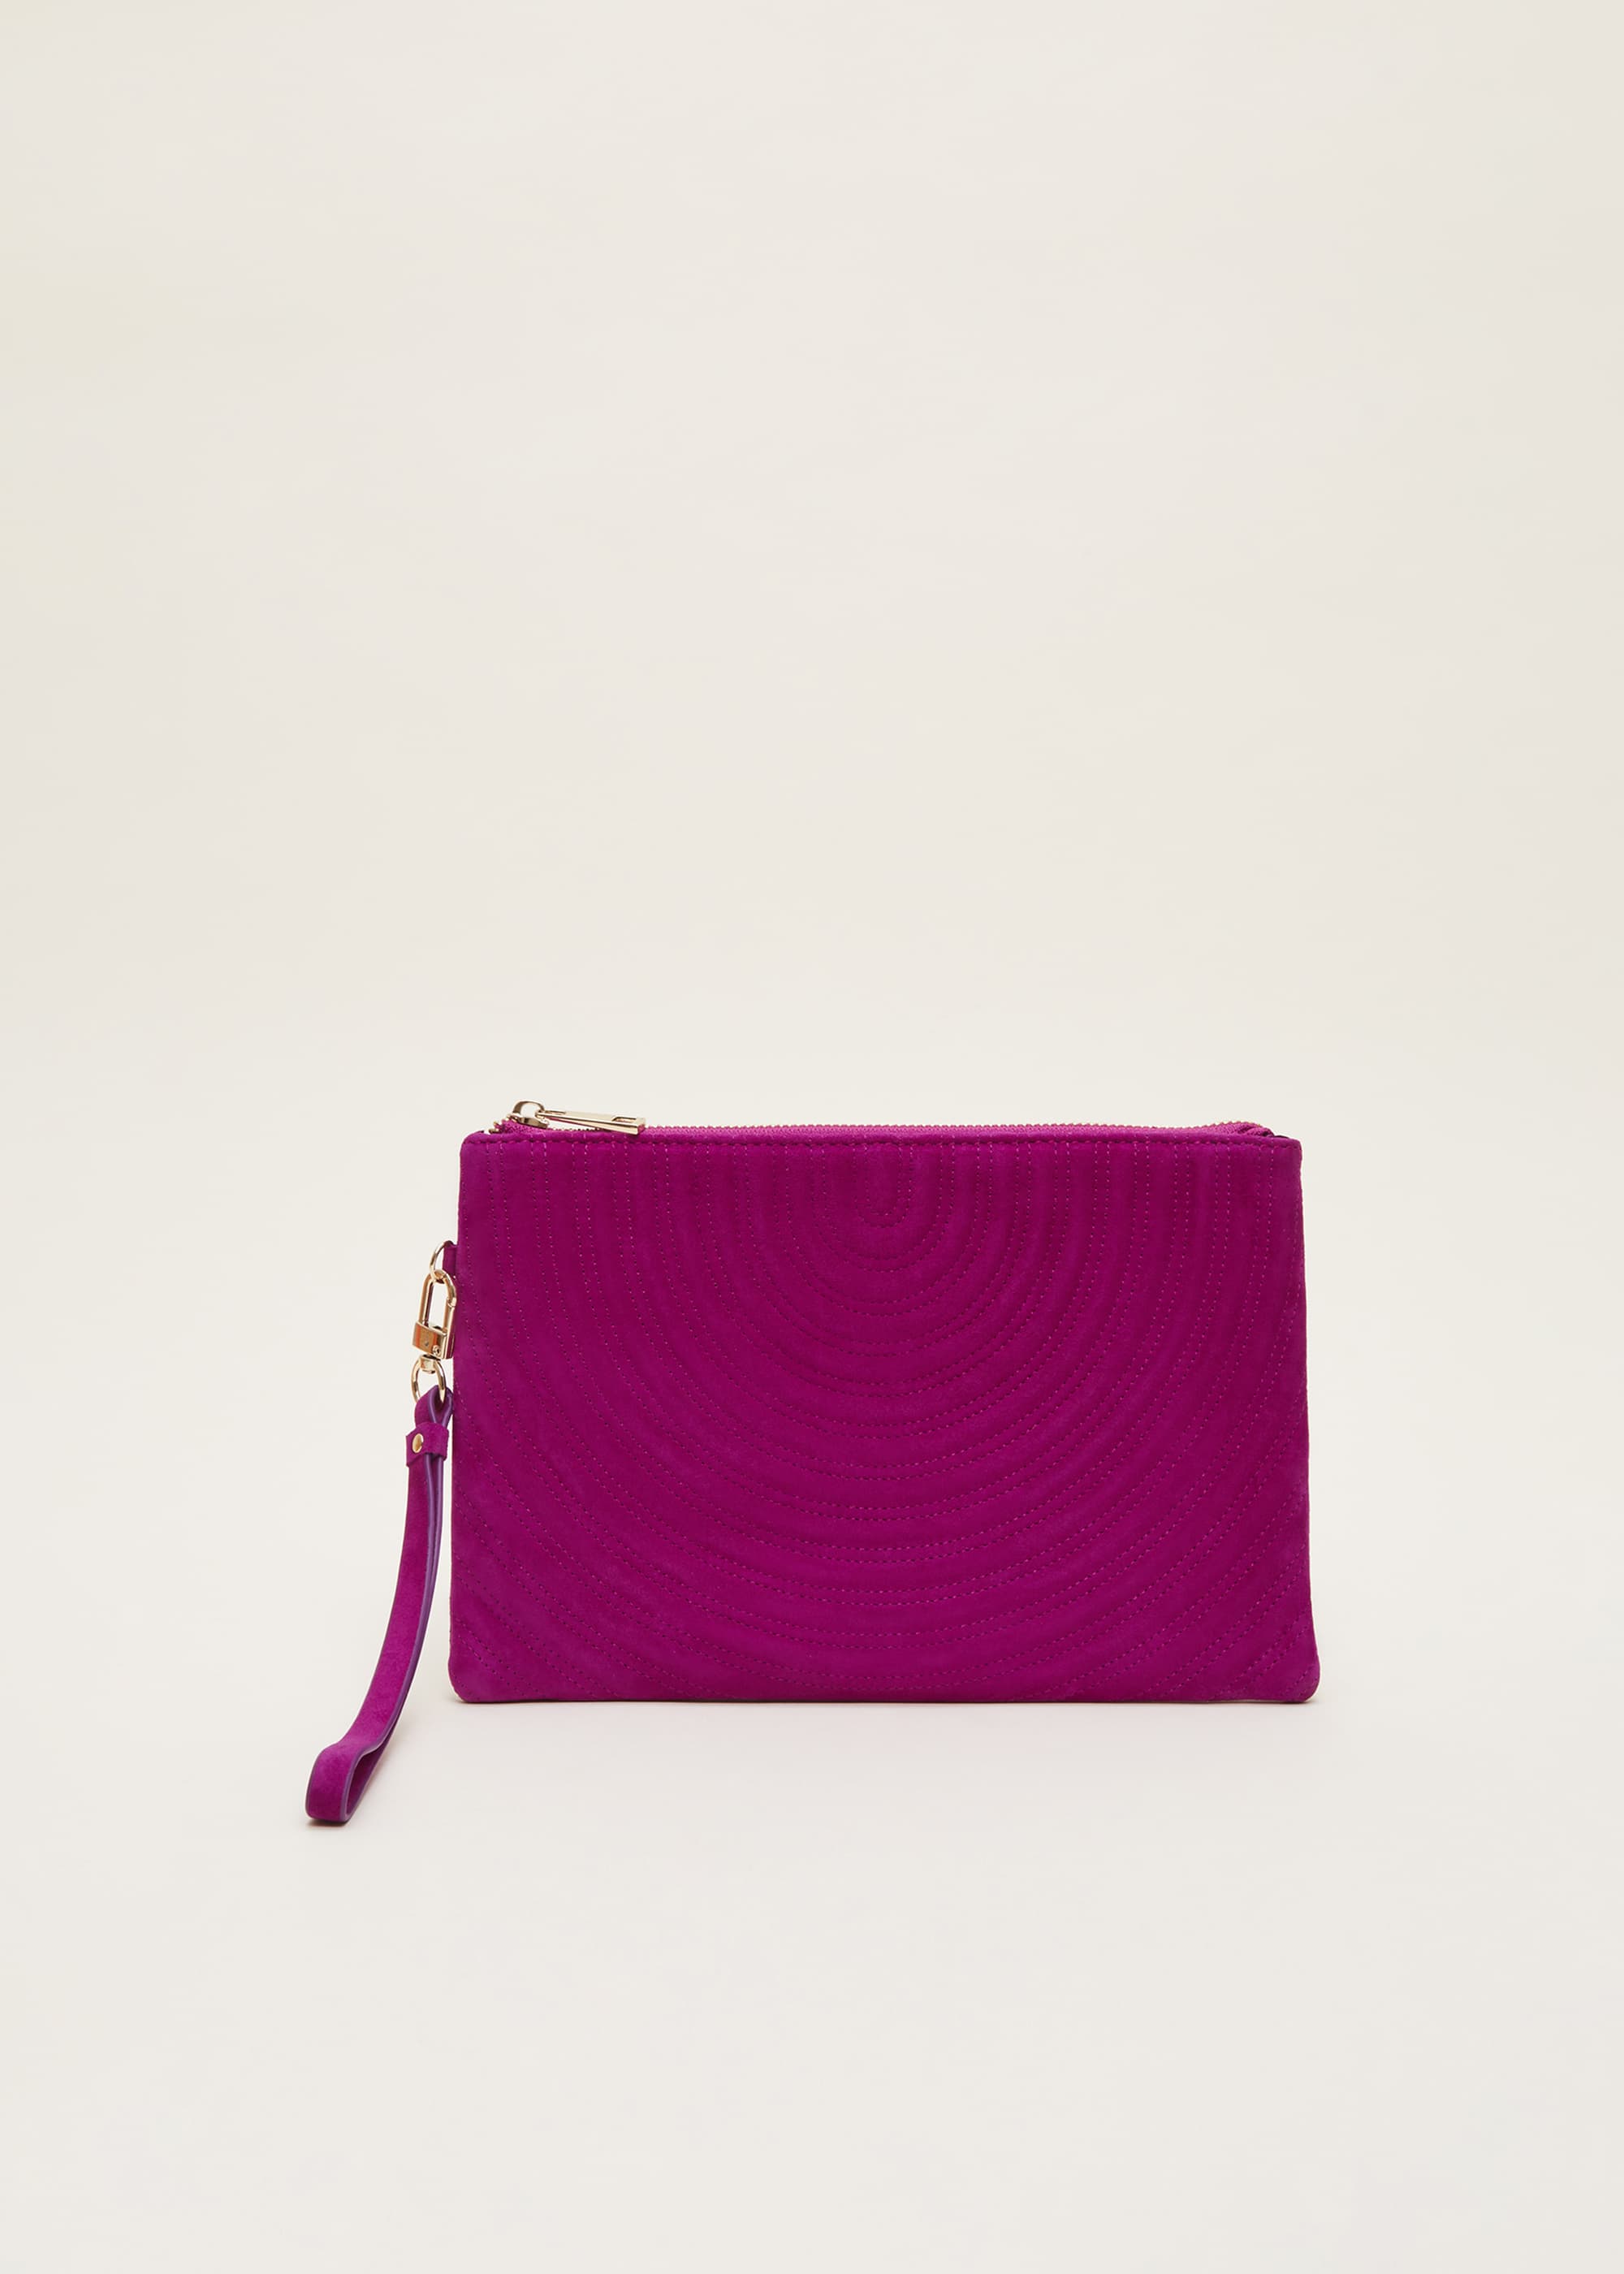 Phase Eight Women's Dark Pink Suede Clutch Bag